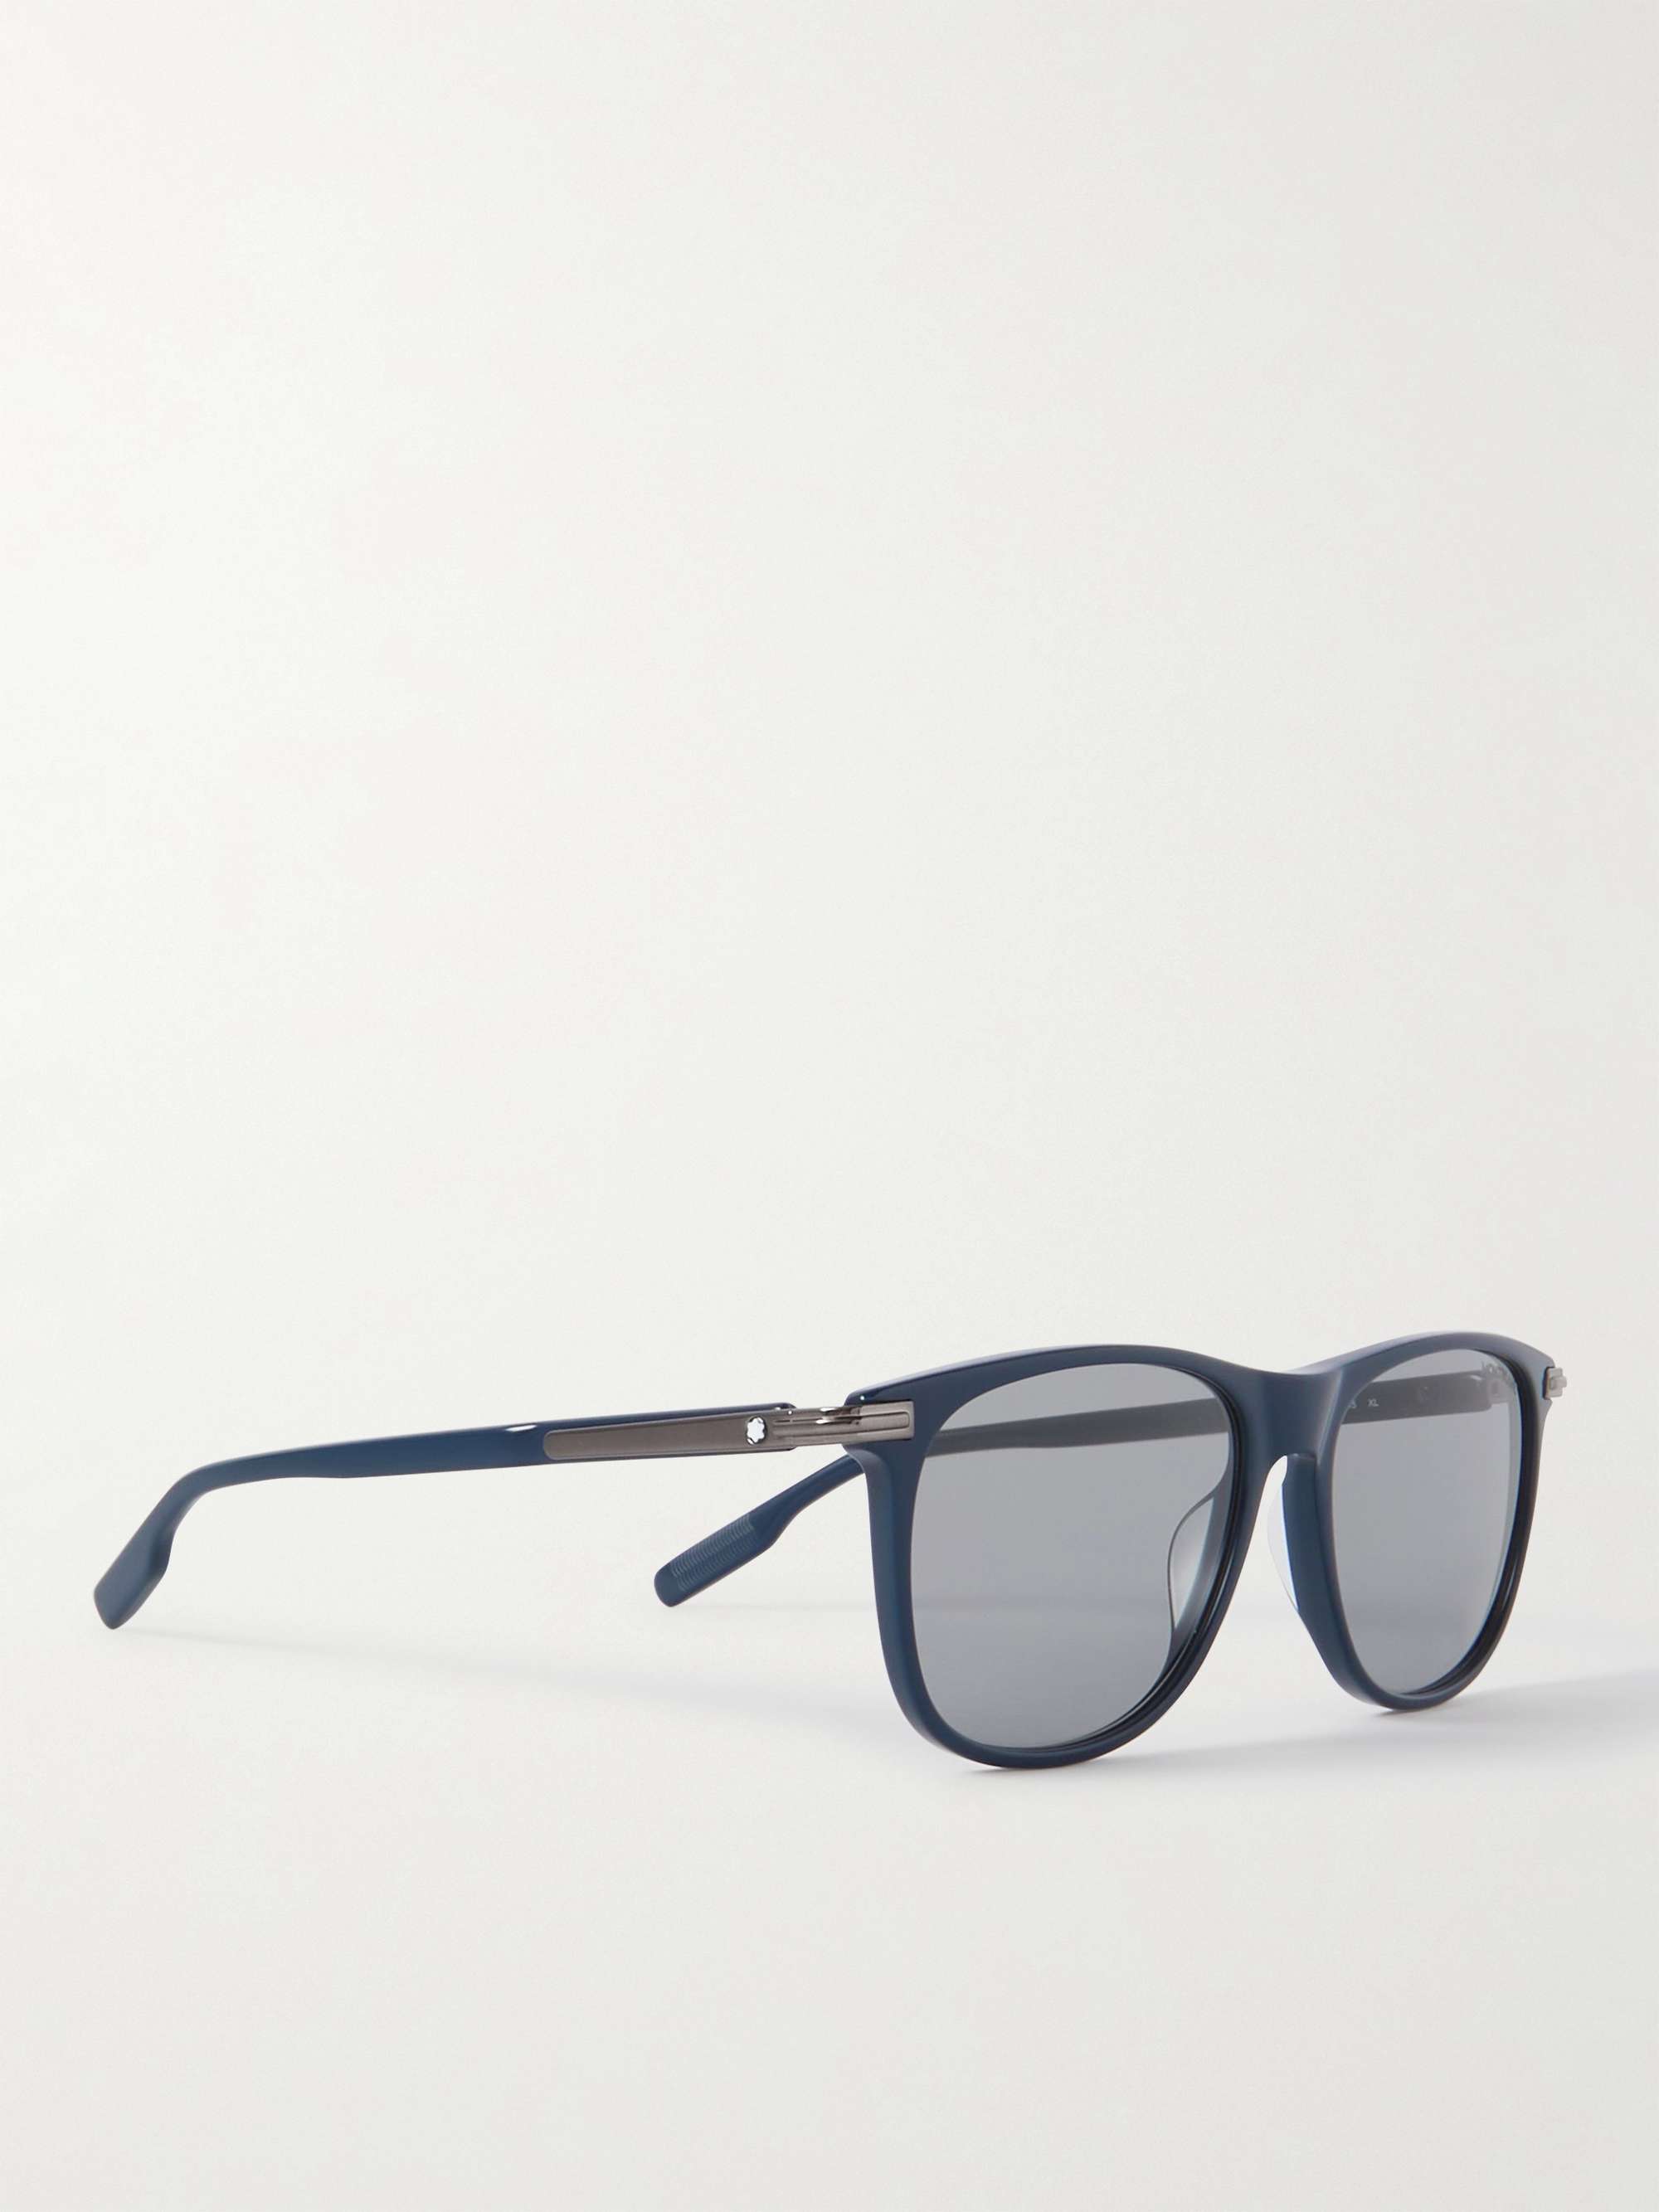 MONTBLANC Square-Frame Acetate Sunglasses